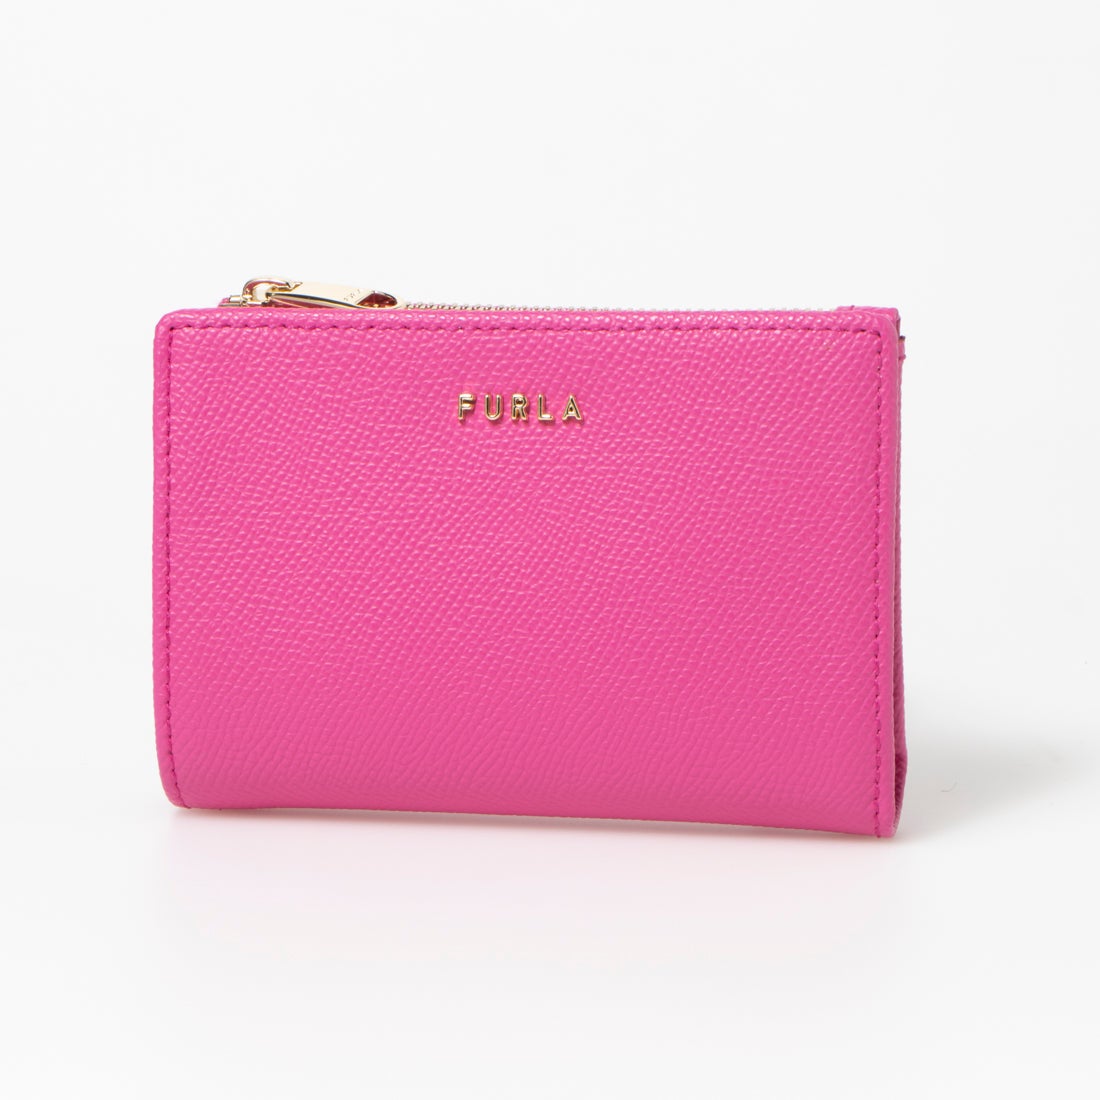 二つ折り財布ピンク良品 フルラ FURLA 二つ折り財布 ピンク - 折り財布